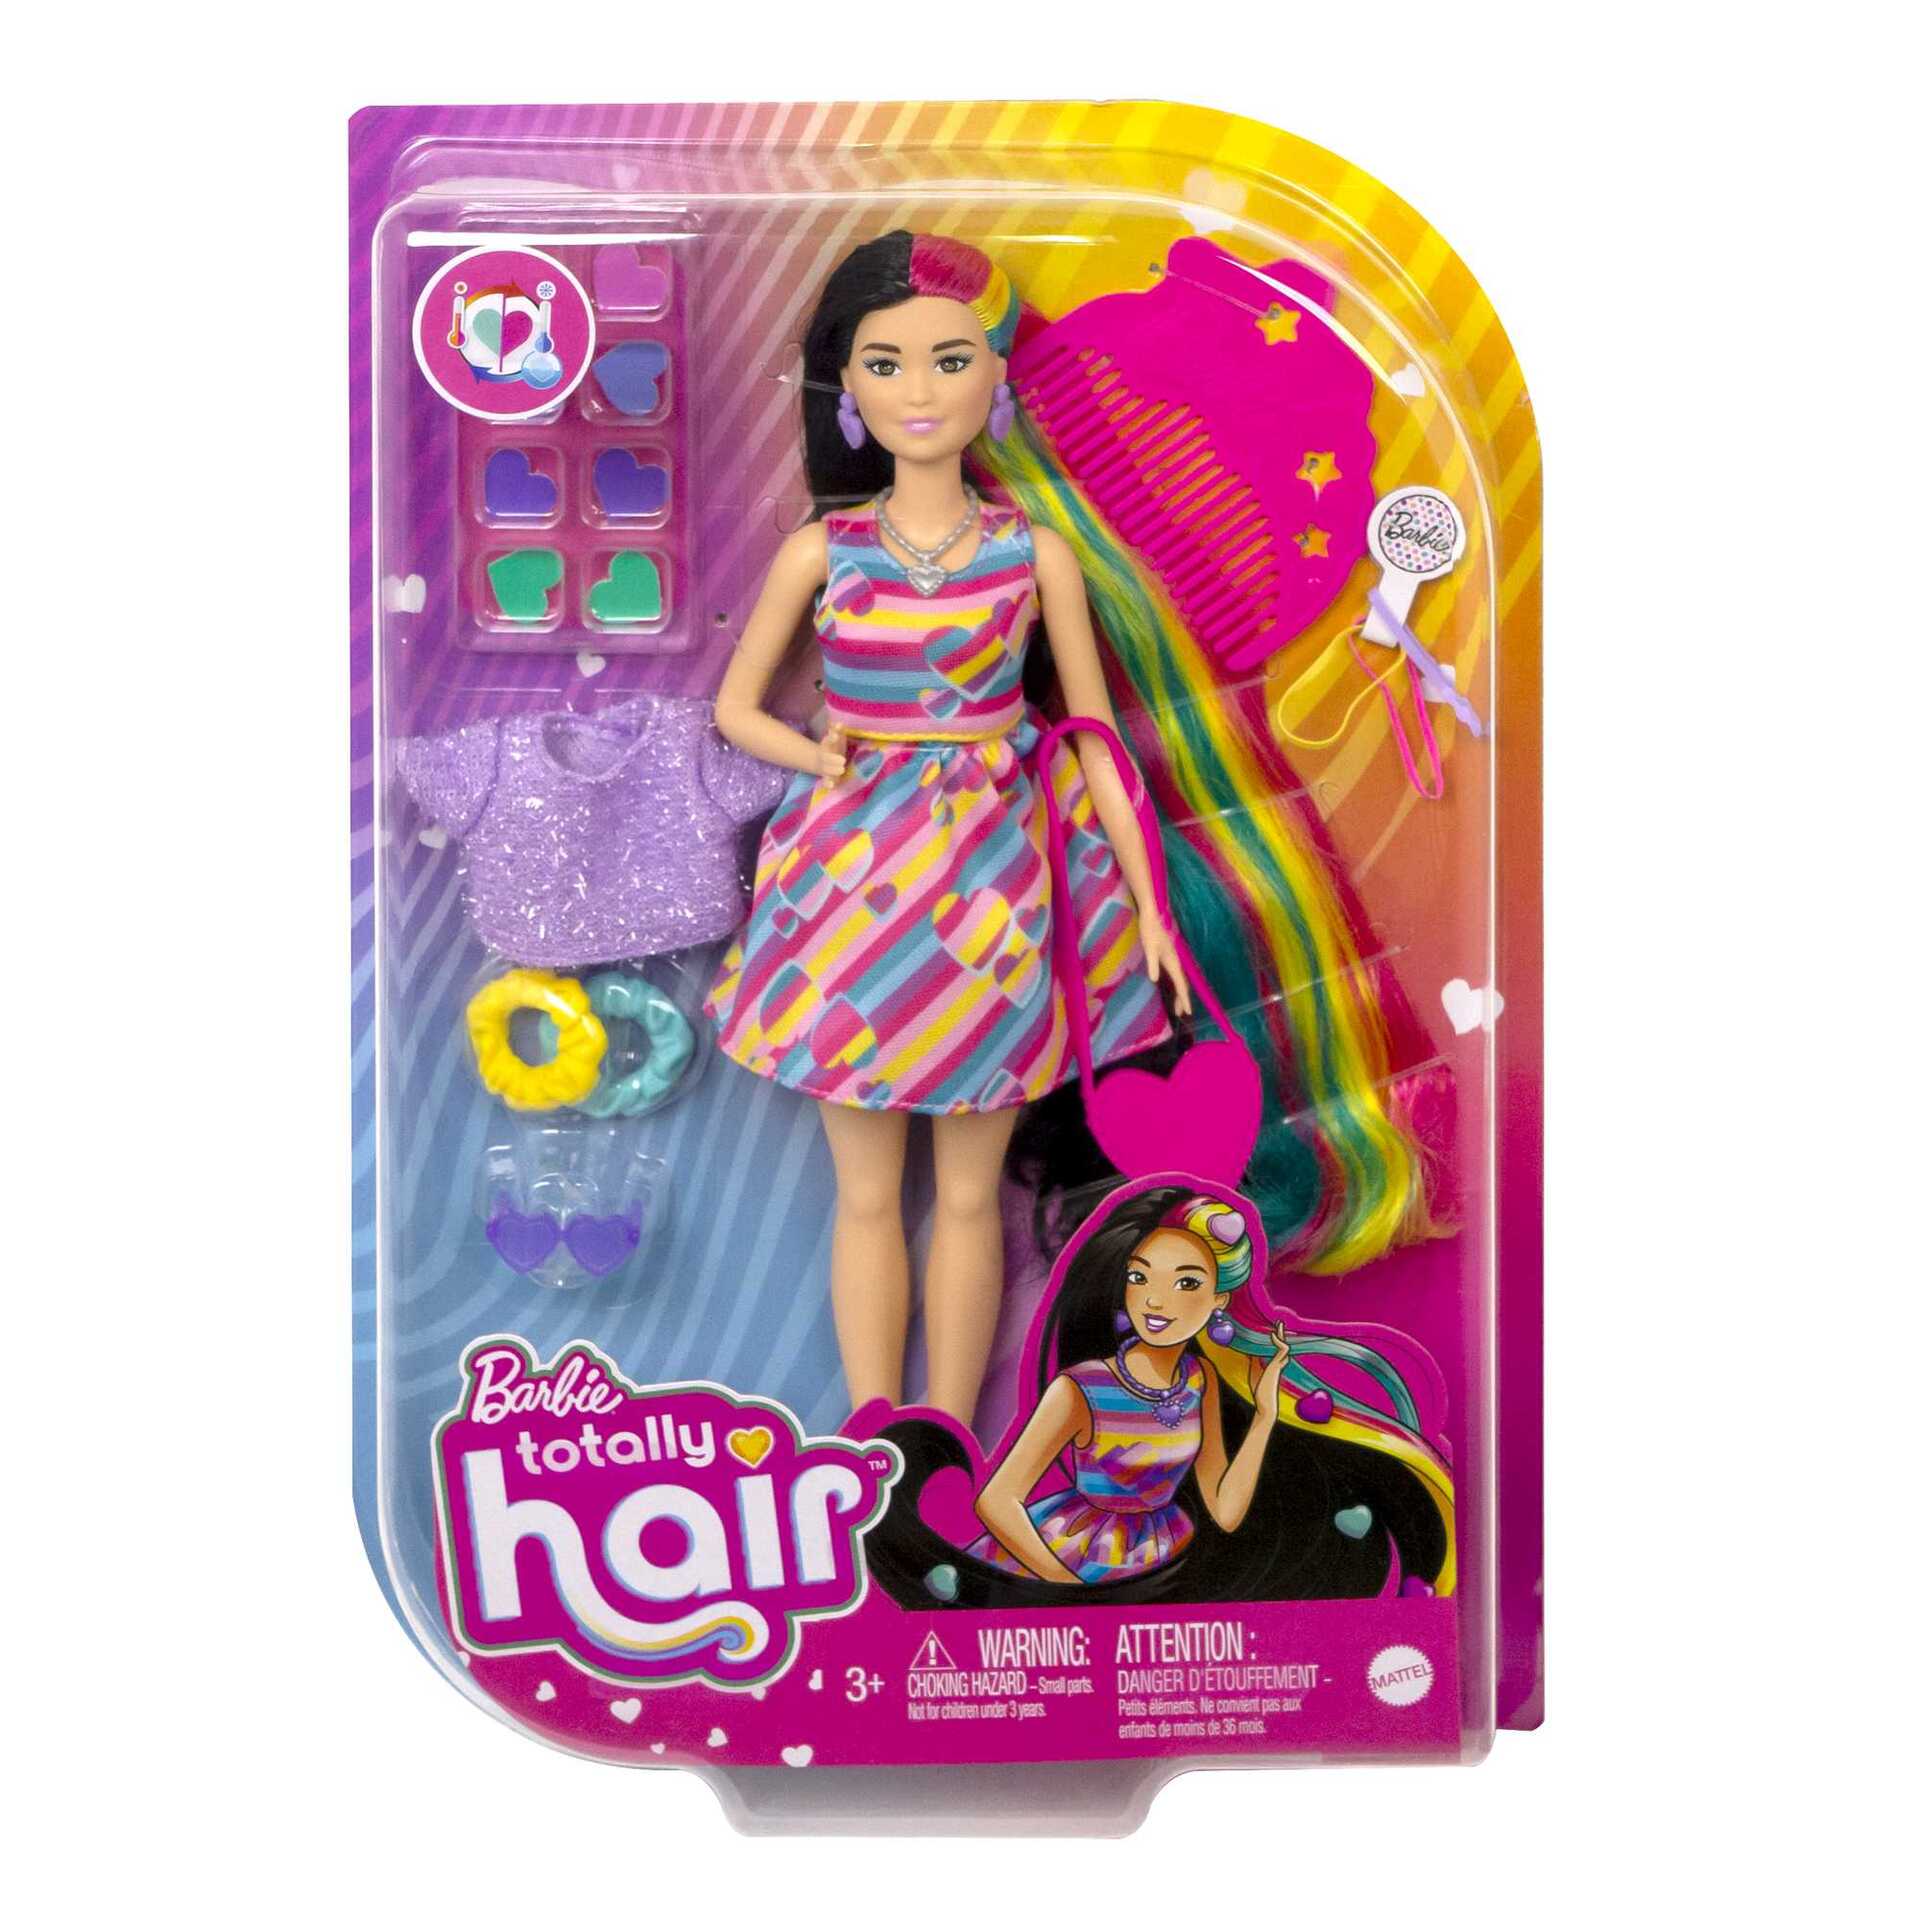 Barbie articulée - Trouvez le meilleur prix sur leDénicheur